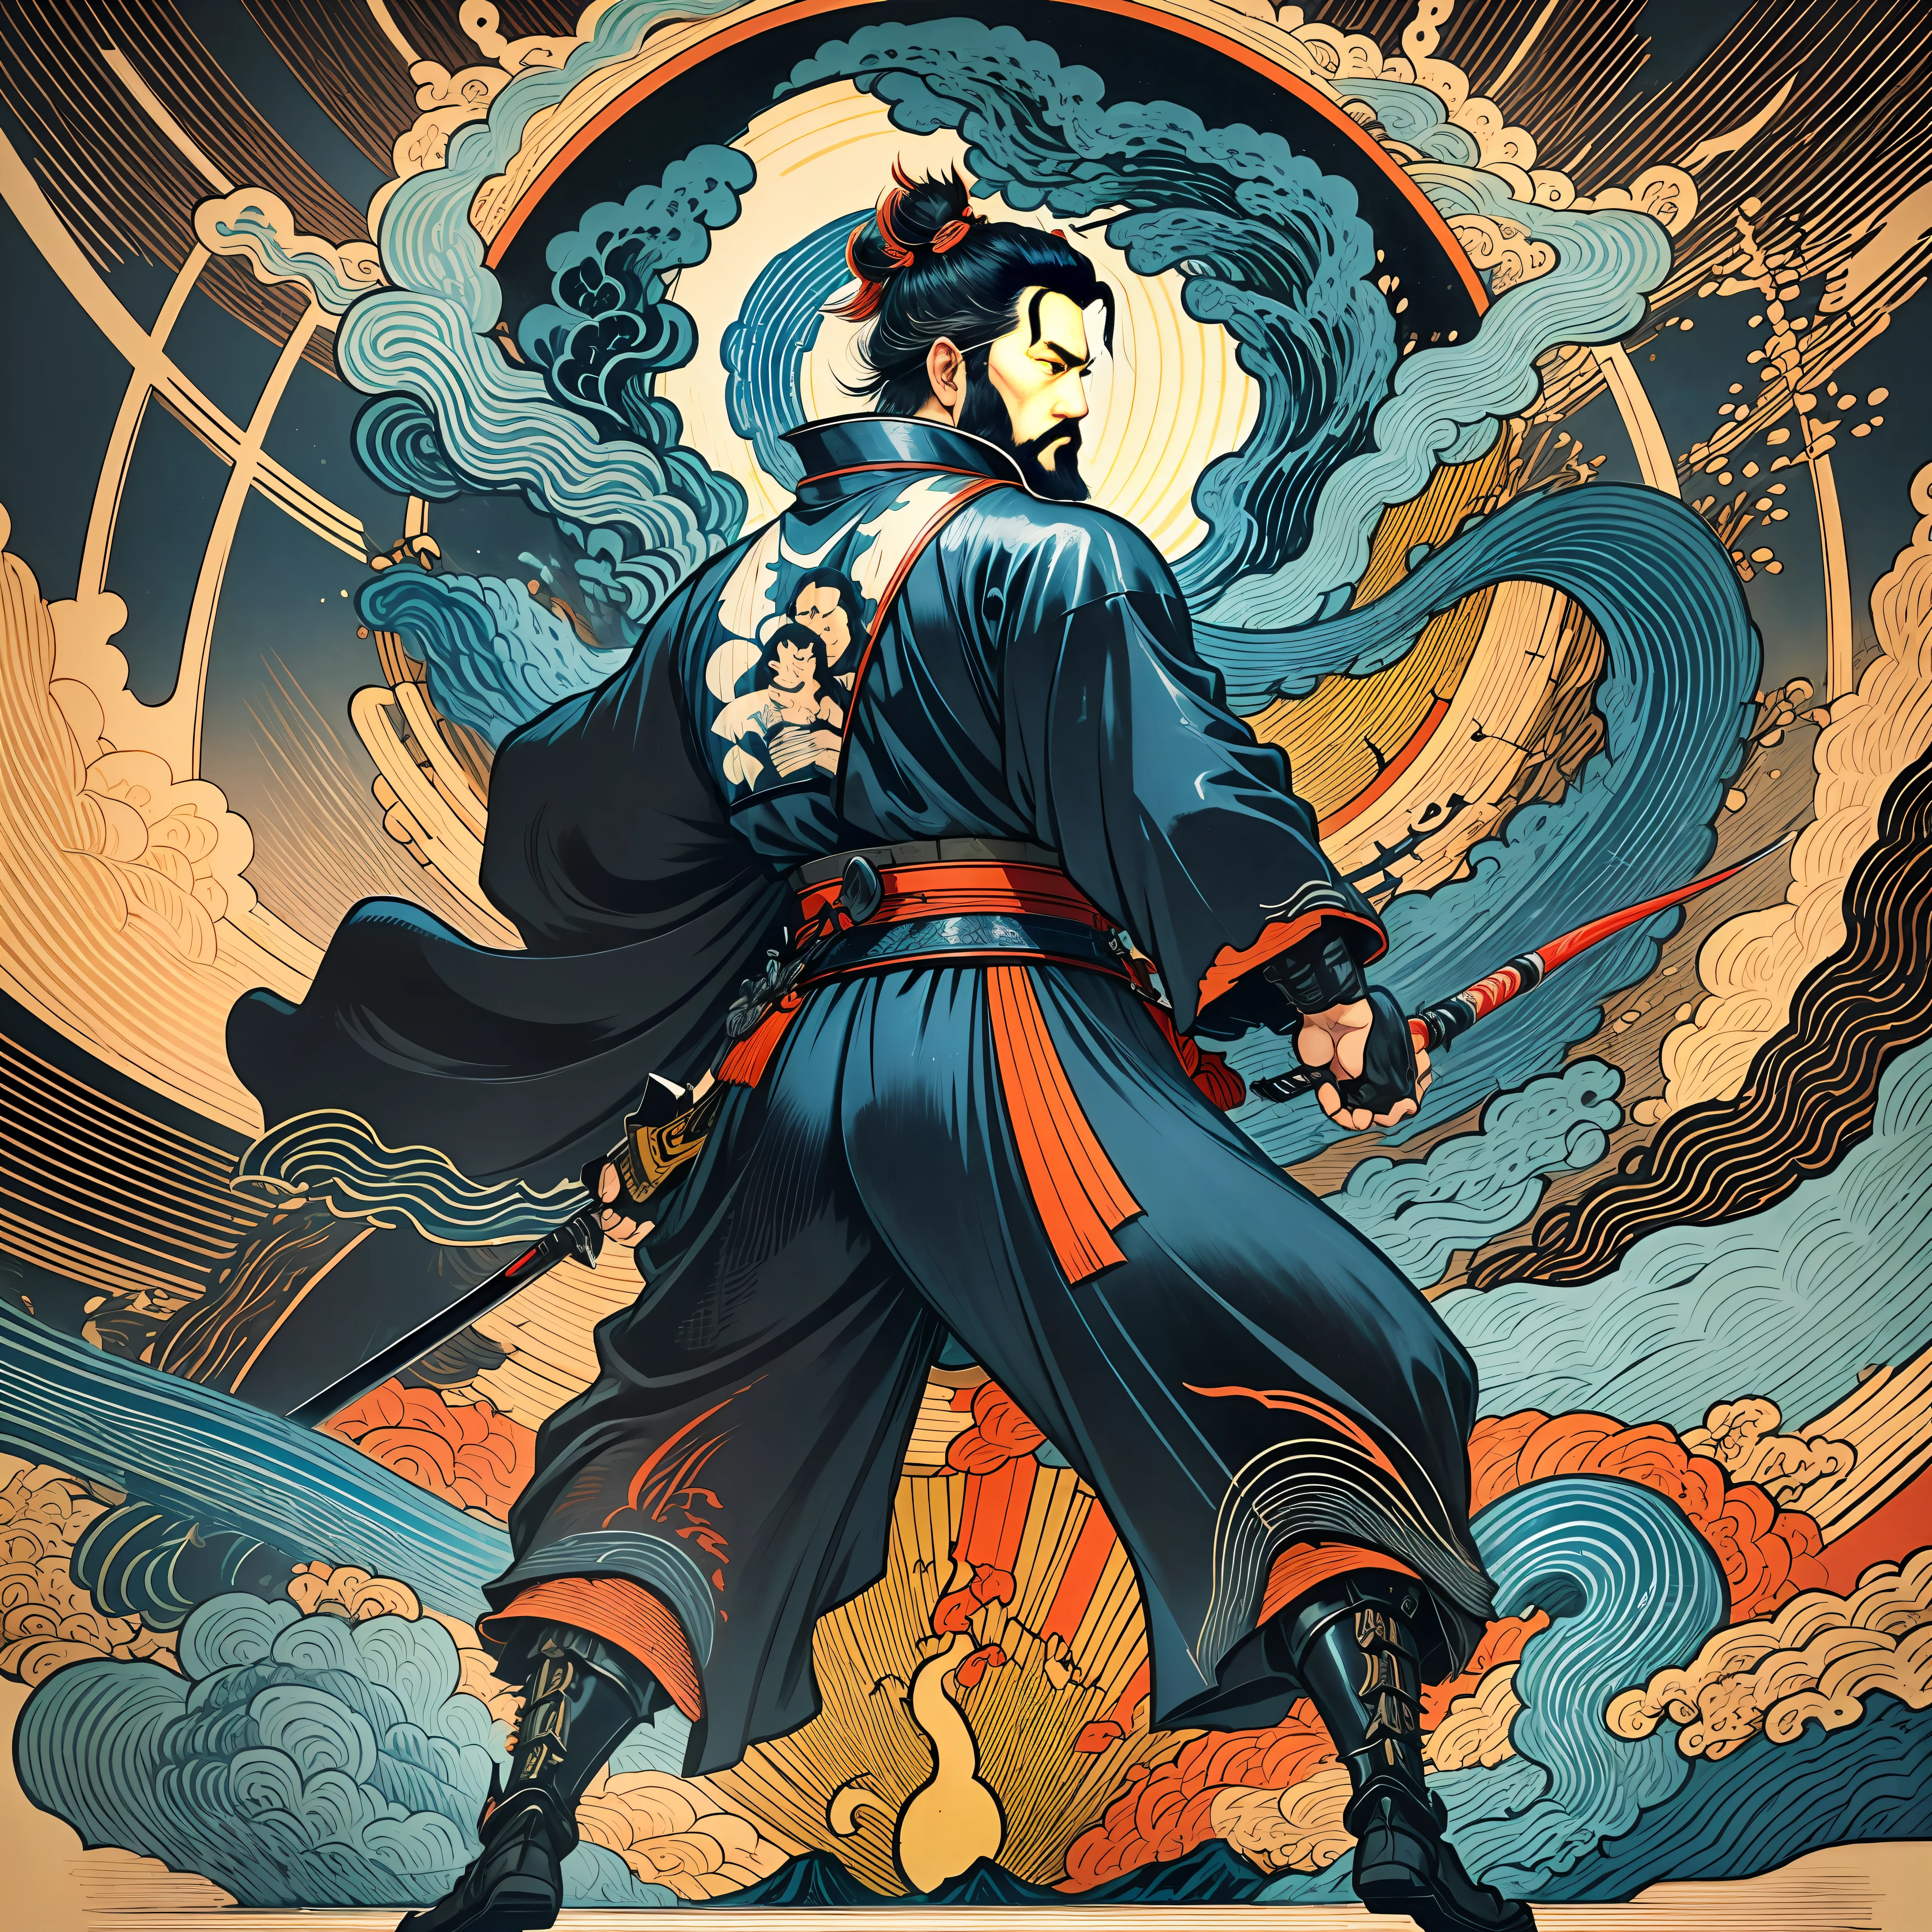 É uma pintura de corpo inteiro com cores naturais com desenhos de linhas no estilo Katsushika Hokusai.. O espadachim Miyamoto Musashi tem um corpo grande como um homem forte. Samurais do Japão. Com uma expressão digna, mas viril, de determinação, ele enfrenta espíritos malignos. Ele tem cabelo curto preto e um curto, barba aparada. Sua parte superior do corpo é coberta com um quimono preto jato com uma textura brilhante, e seu hakama é de joelhos. Na mão direita ele segura uma espada japonesa com uma parte de espada mais longa. na mais alta qualidade, obra-prima de alta resolução estilo ukiyo-e relâmpago e chamas giratórias. Entre eles, Miyamoto Musashi está de costas retas, De frente.